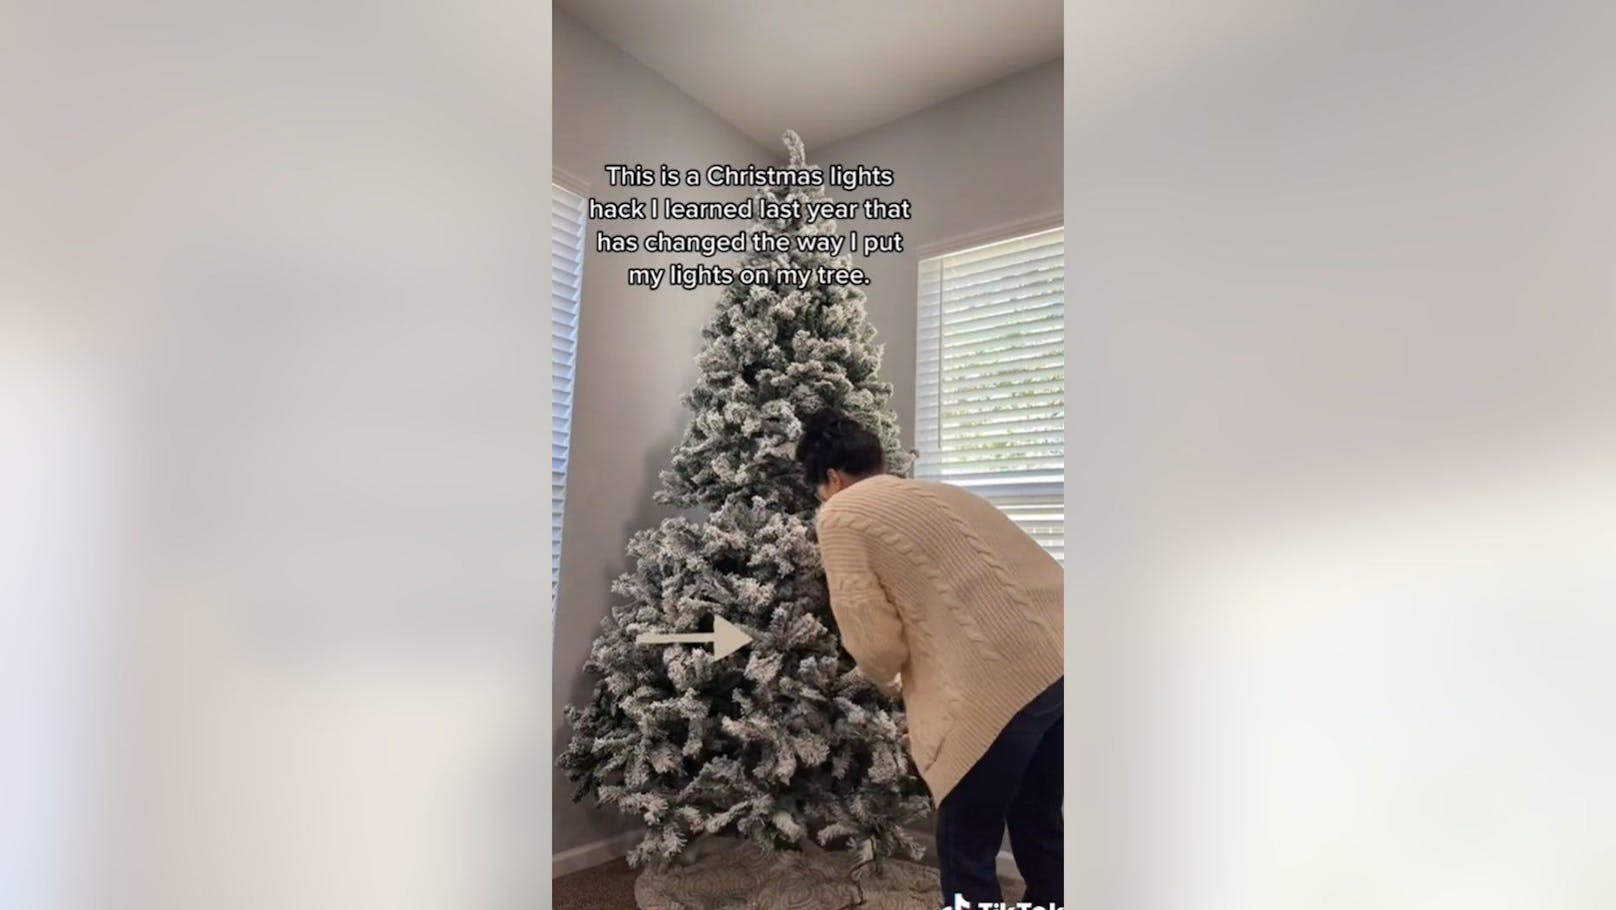 Tamara Weatherbee zeigt auf TikTok, wie das anbringen der Lichterkette an den Weihnachtsbaum ganz einfach geht. Sie beginnt unten.